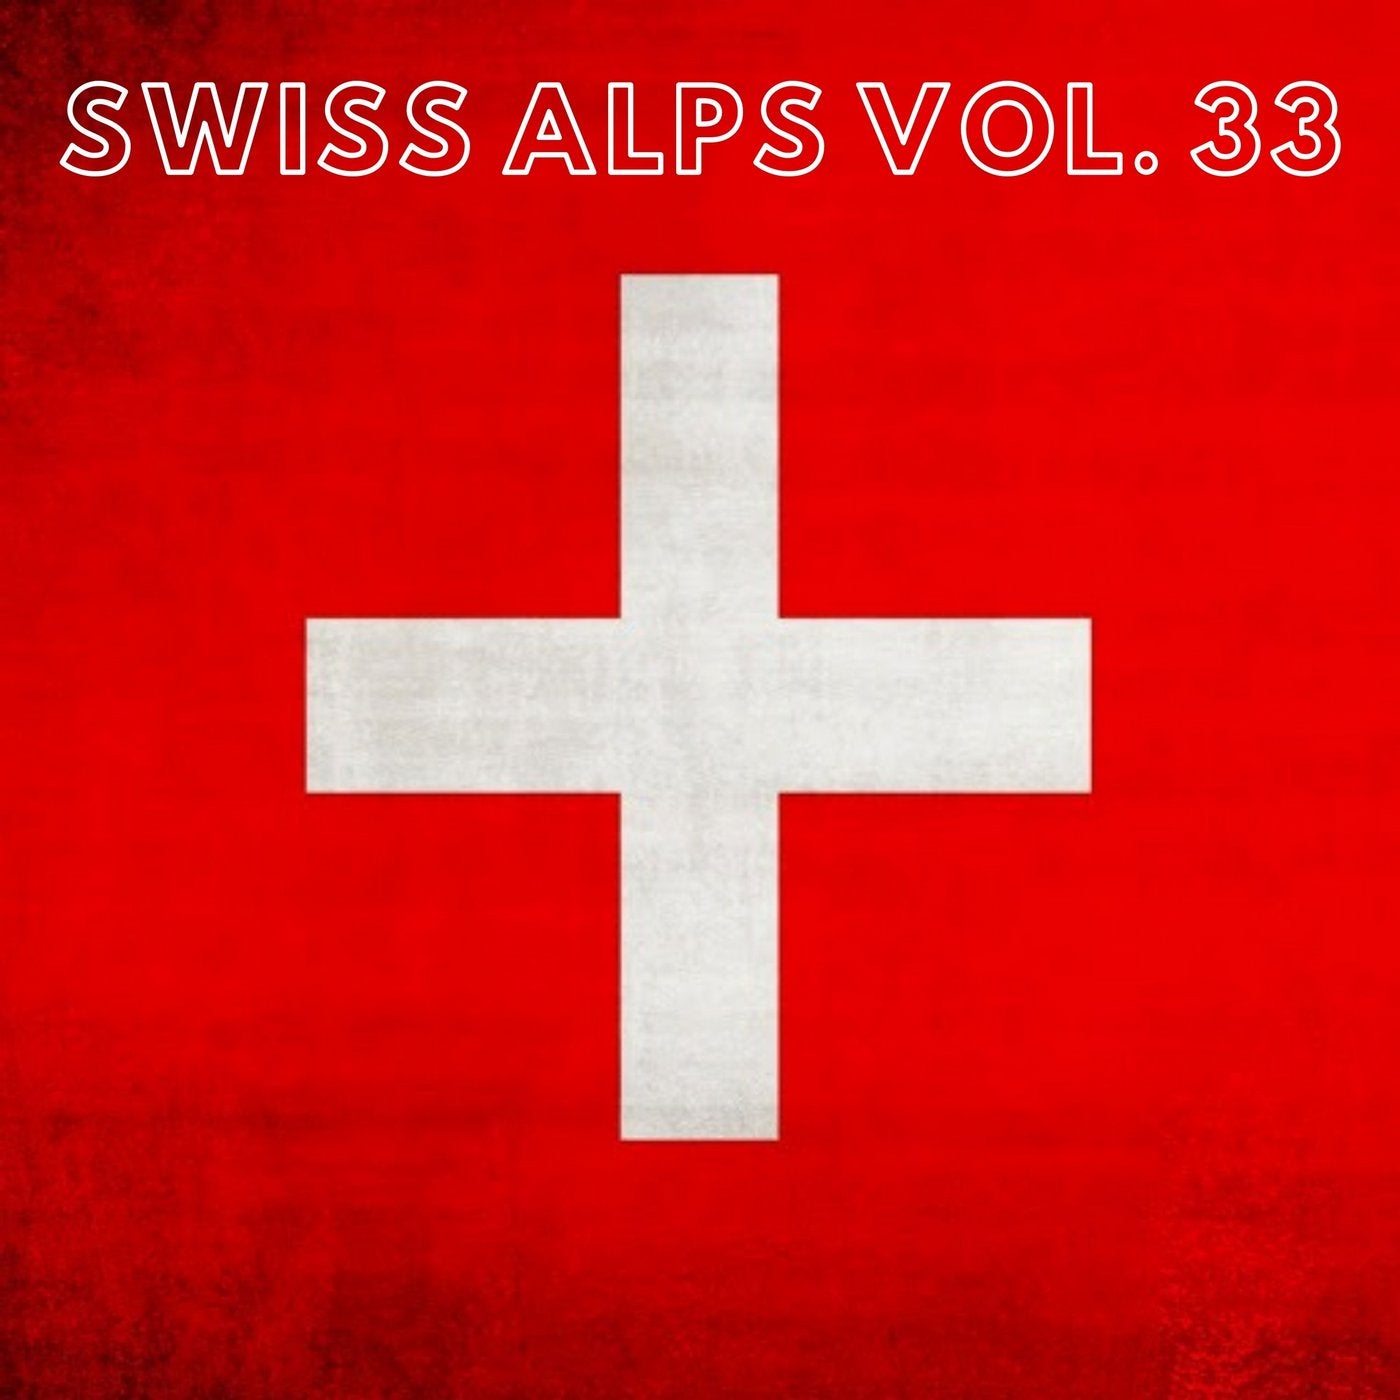 Swiss Alps Vol. 33